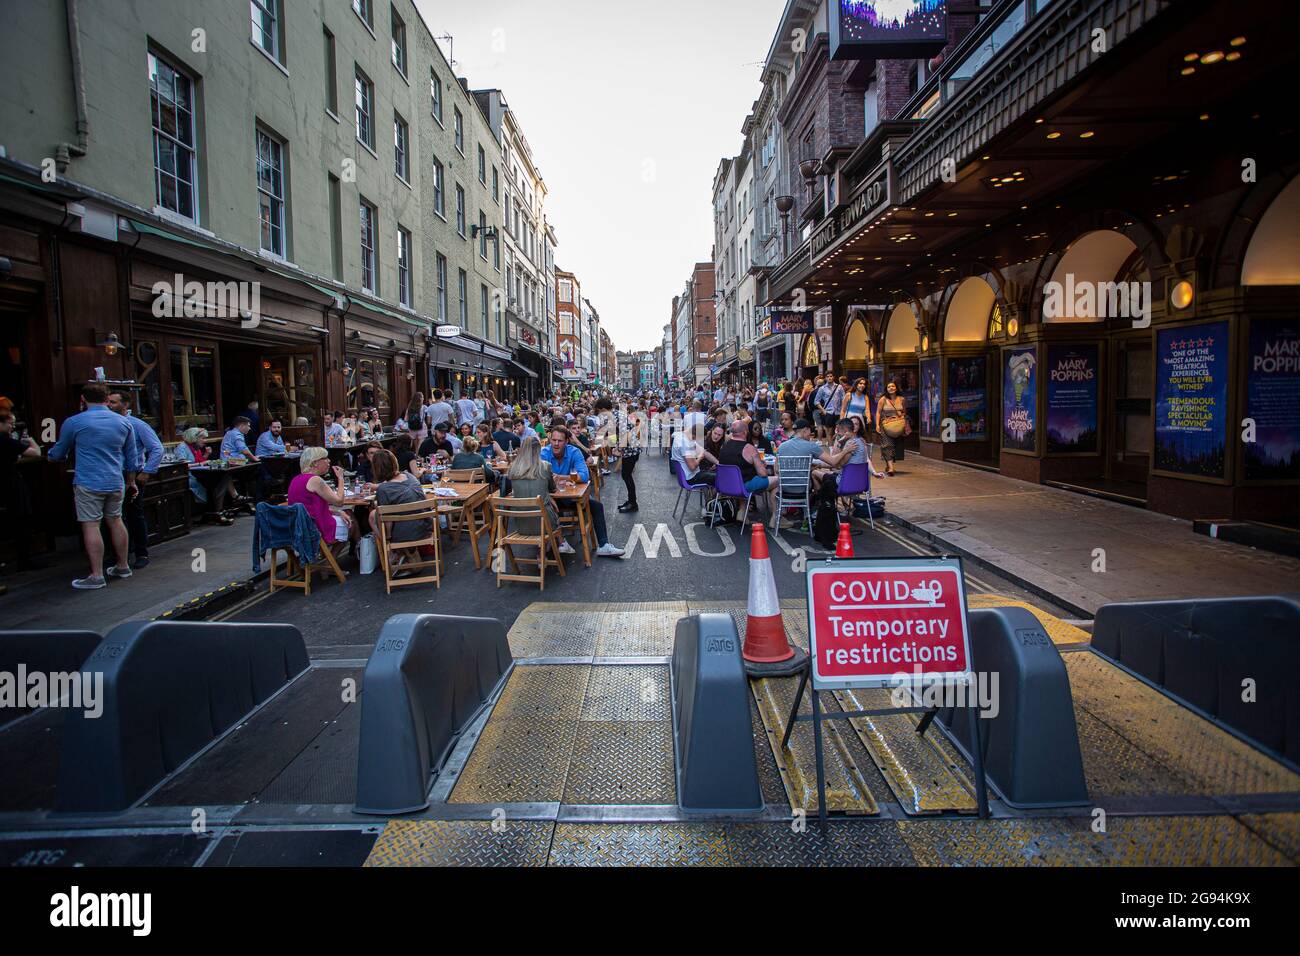 Les gens d'un restaurant sont vus derrière un panneau « restrictions temporaires de covid » dans Soho à Londres, qui lève toutes les restrictions sur la vie quotidienne en Angleterre. Banque D'Images